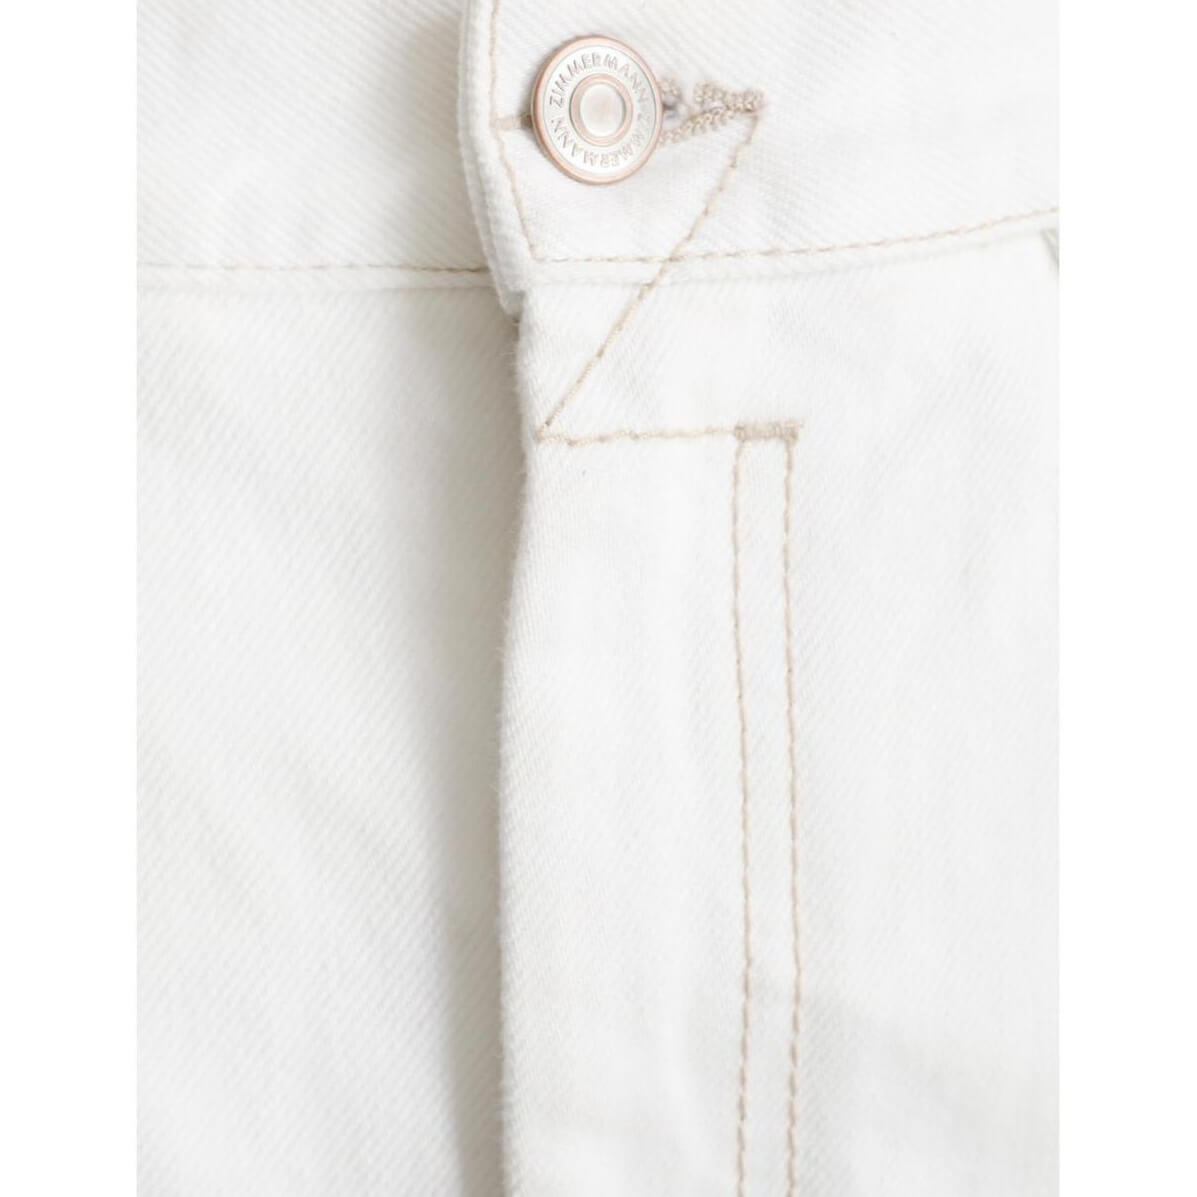 Zimmermann Vintage White Denim Pocket Midi Skirt – evaChic